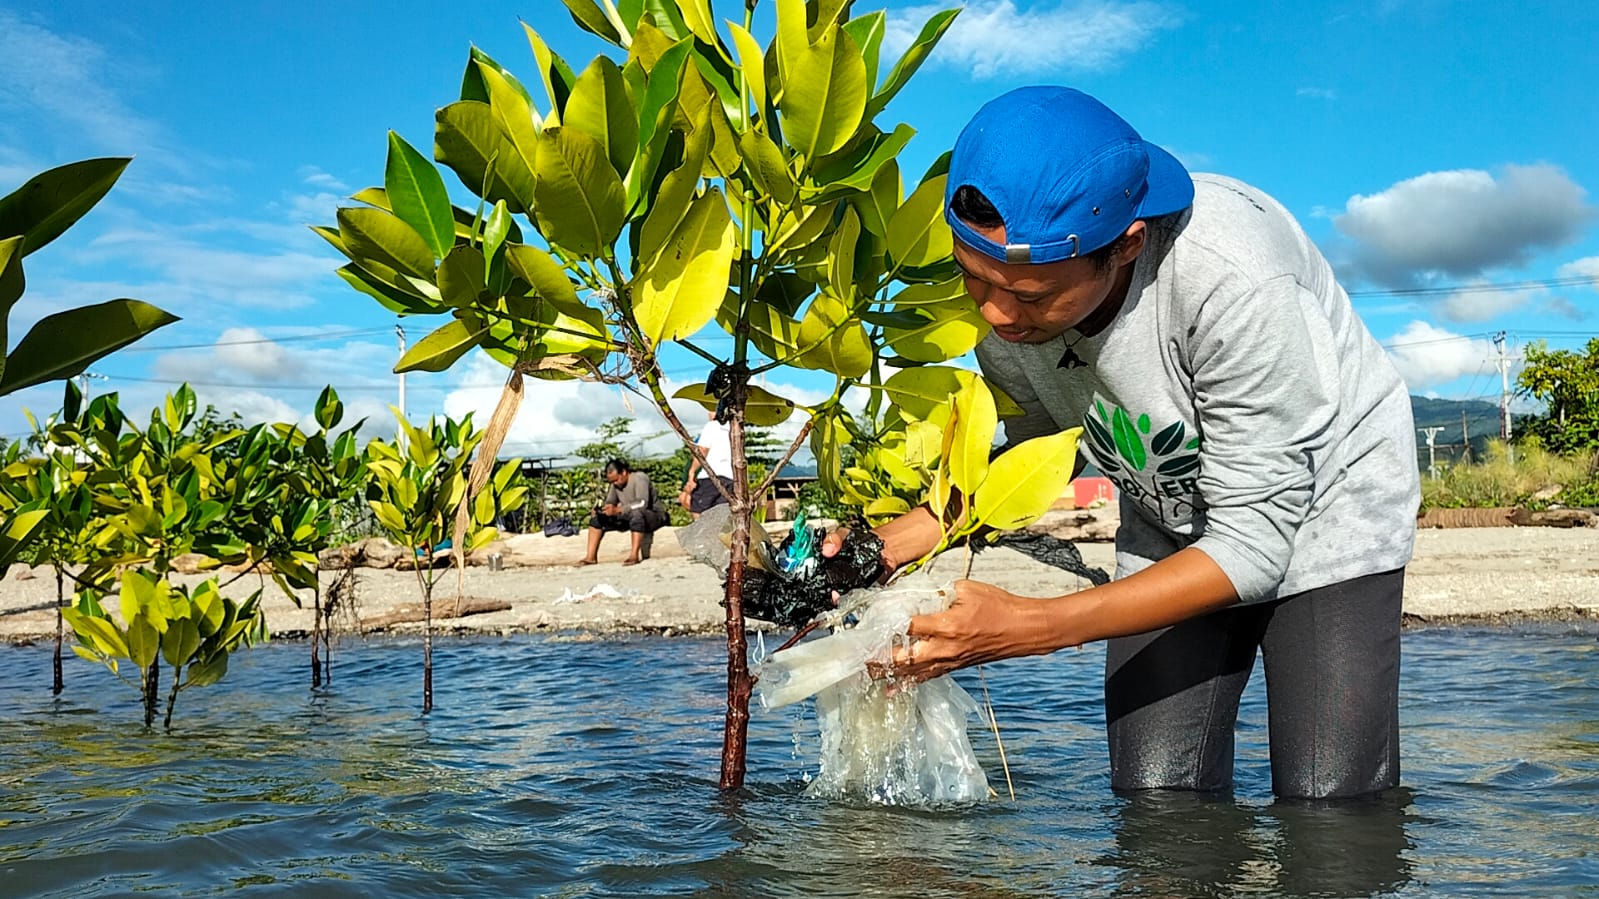 Aktivis seangle Kota Palu sedang membersihkan mangrove yang terjerat sampah plastik di Teluk Palu. (Foto: Ekspedisi Sungai Nusantara)